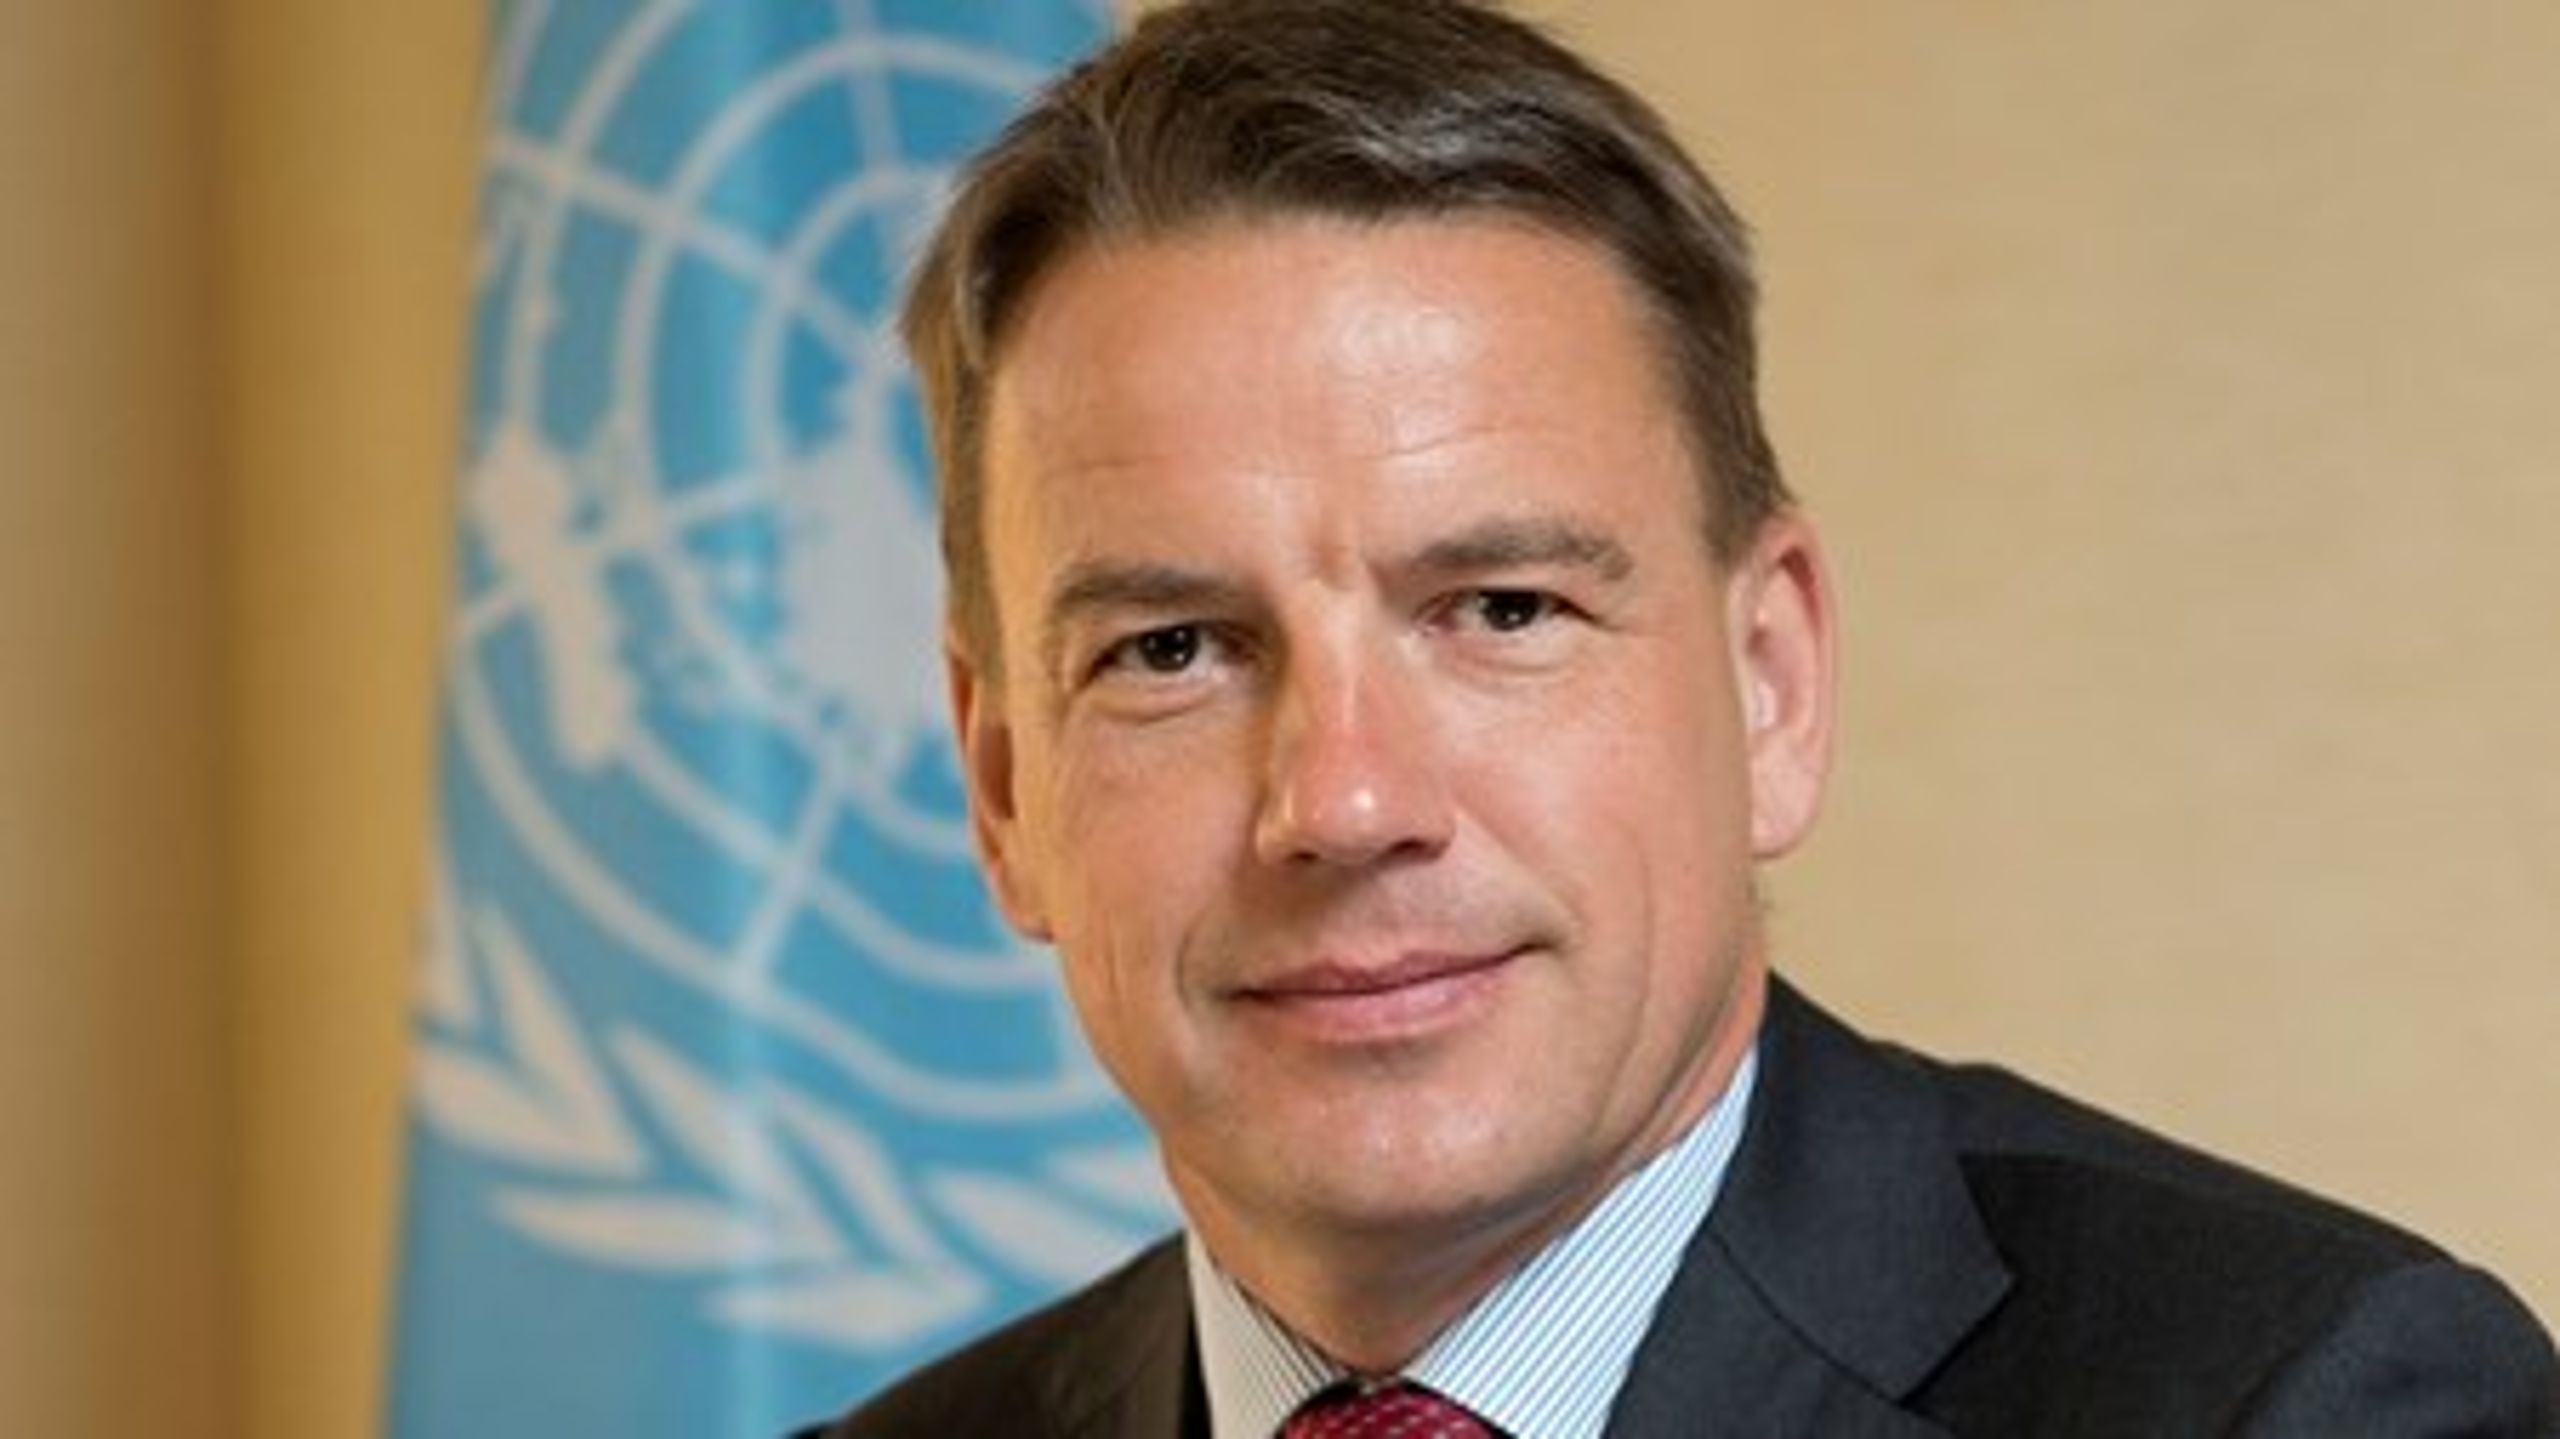 "Det kan godt lade sig gøre, at vi bliver den første generation, der kan udradere den ekstreme fattigdom," siger tidligere udviklingsminister og nuværende chef for UNECE, Christian Friis Bach.